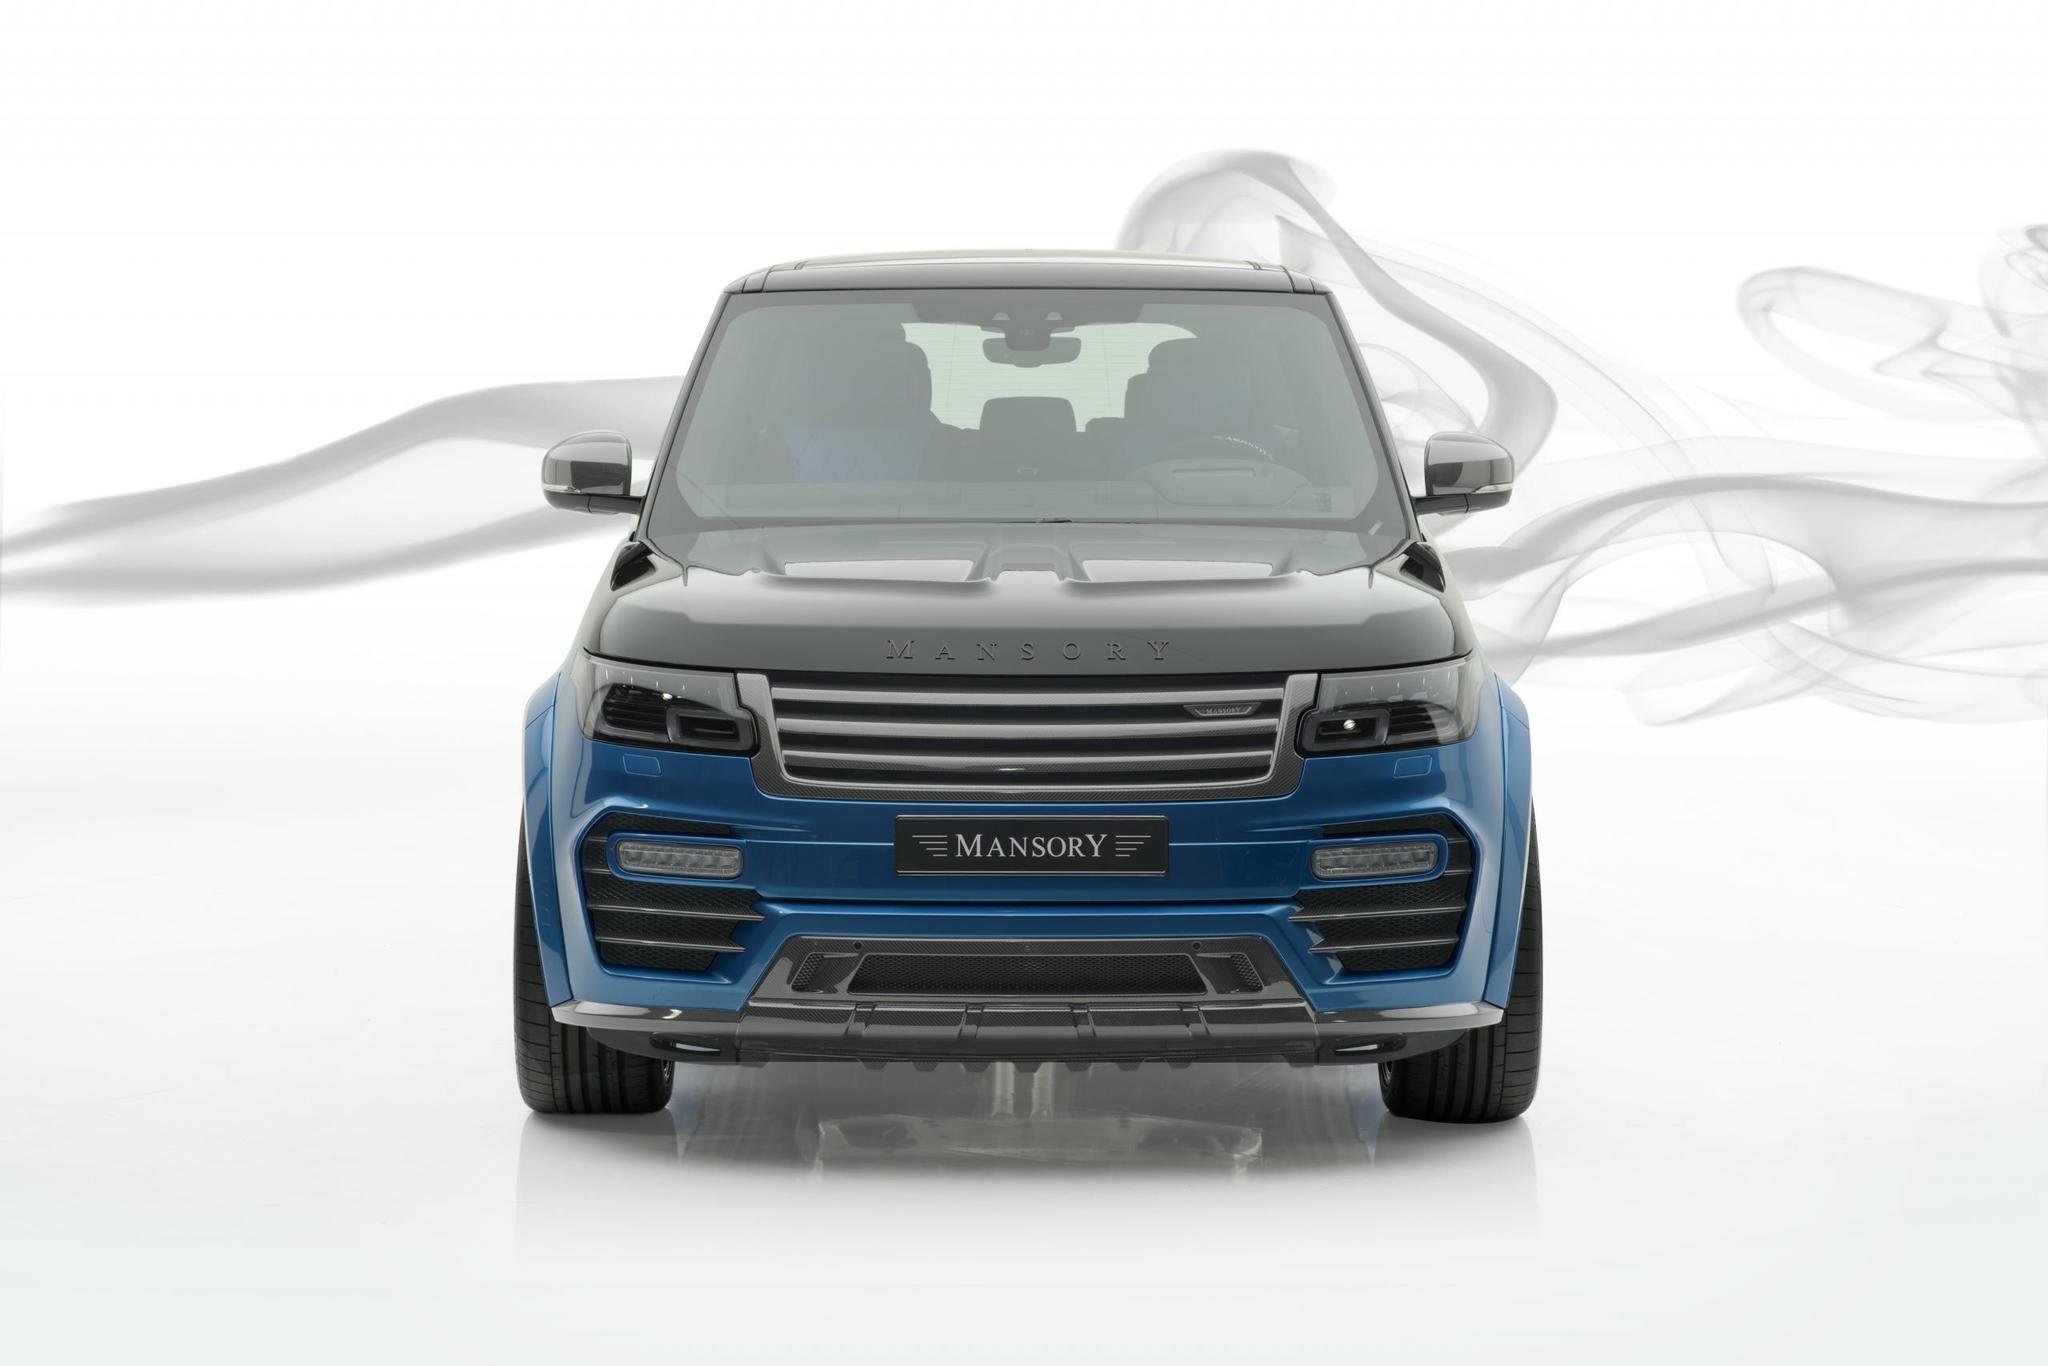 Mansory body kit for Range Rover carbon